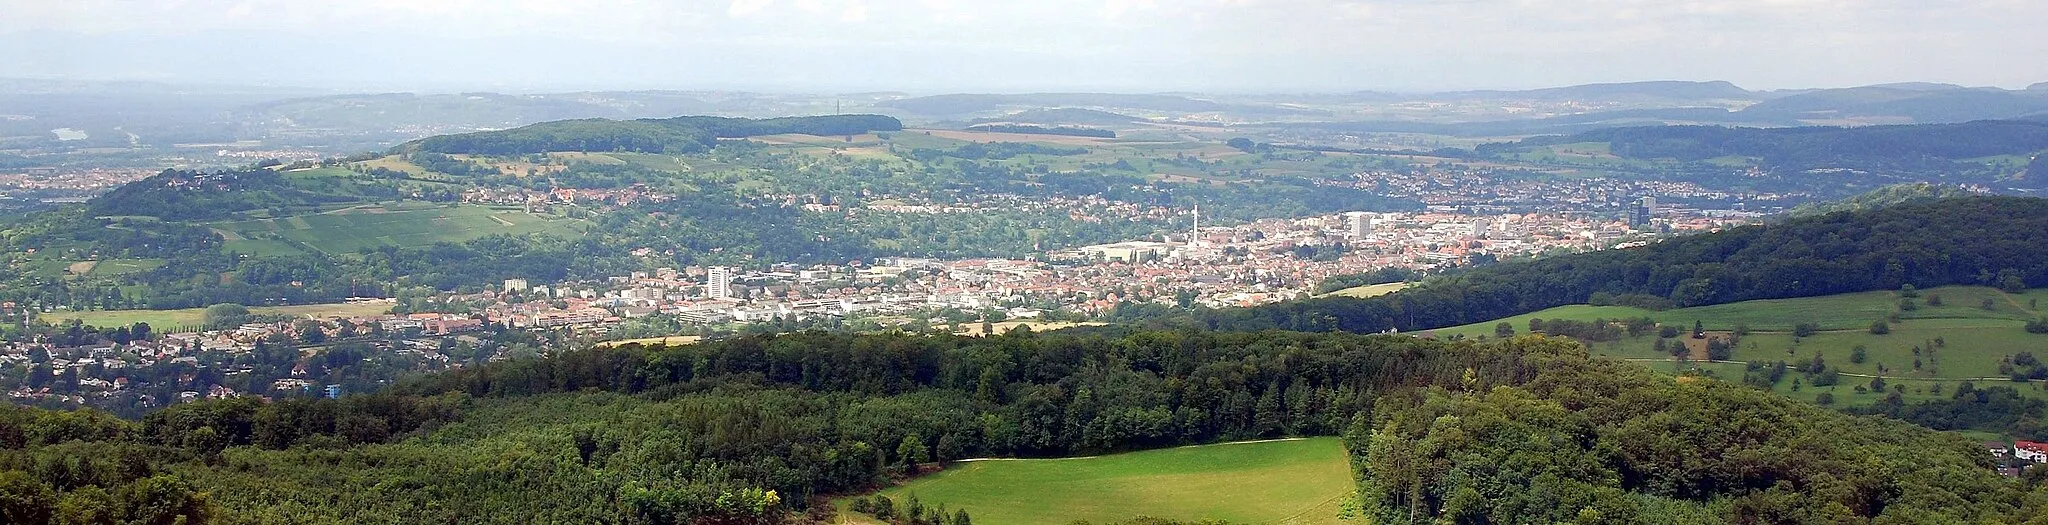 Photo showing: Blick auf Lörrach vom Fernsehturm St. Chrischona
thumb|Original